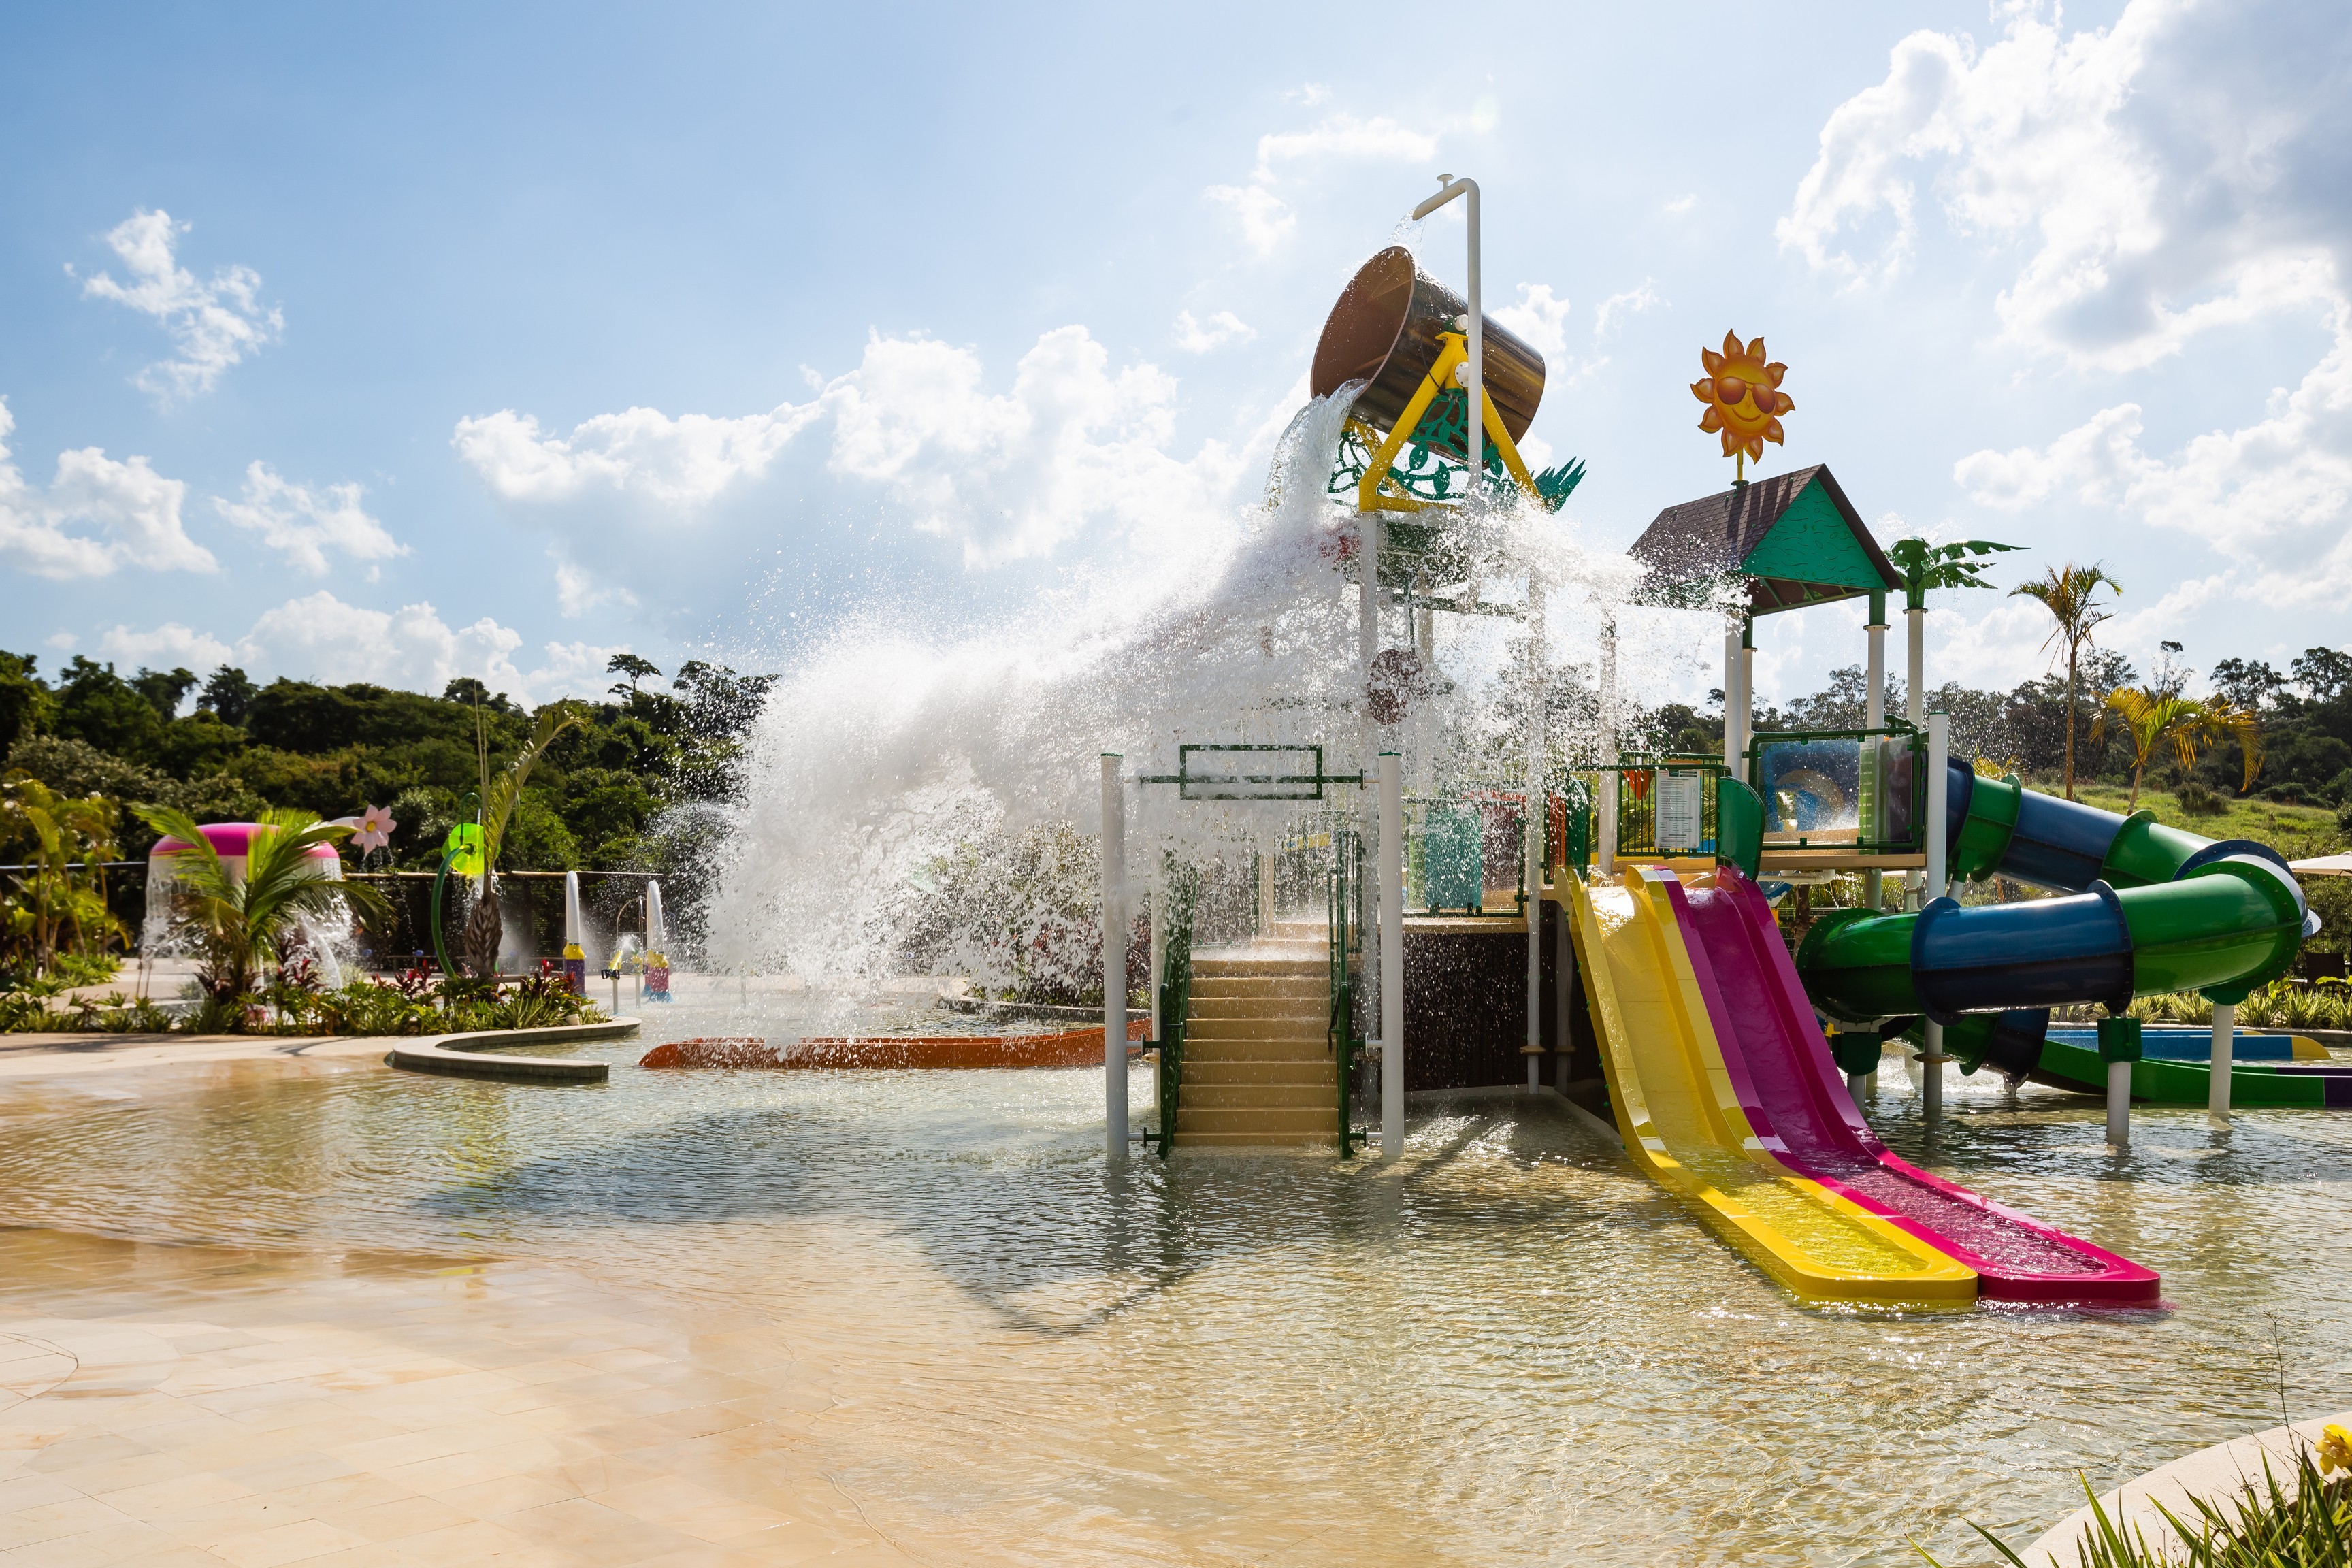 Parque aquático infantil do Cyan Resort (Foto: Divulgação)